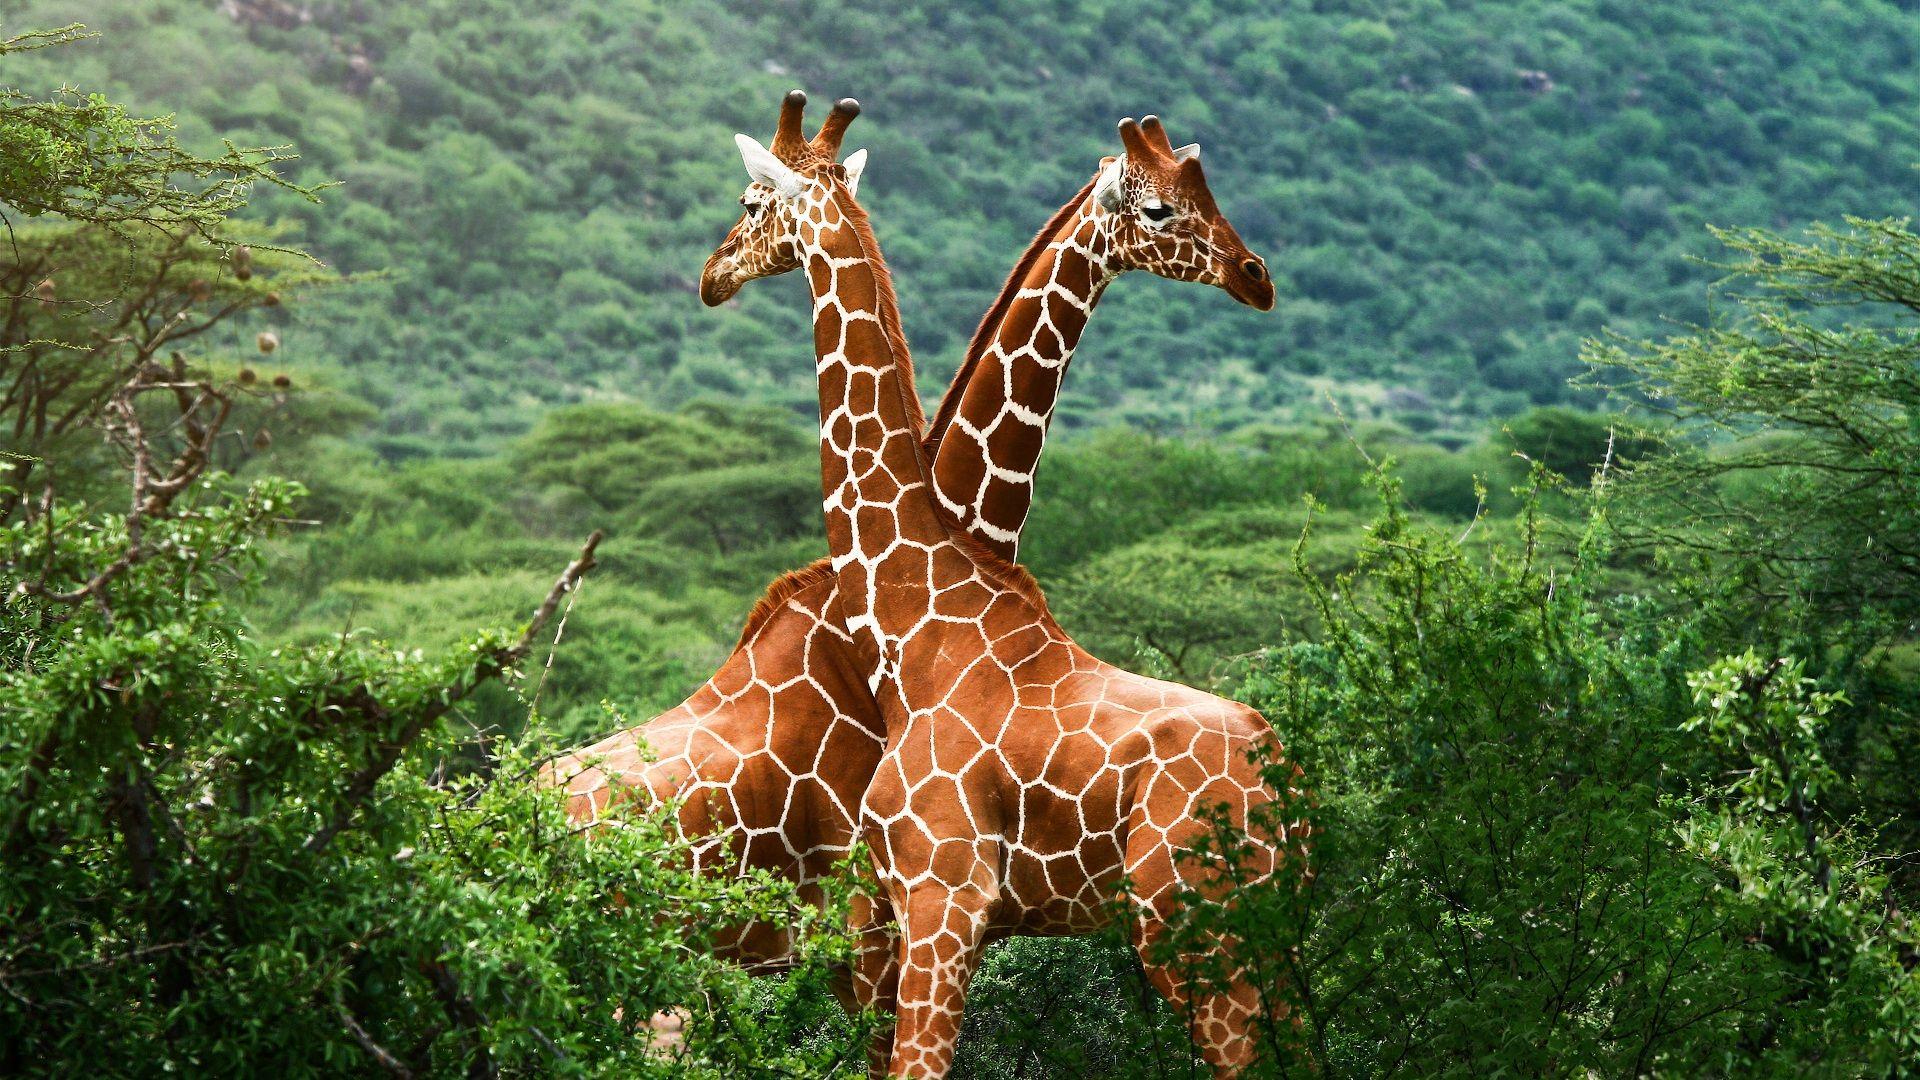 Download Wallpapers 1920x1080 African savanna giraffes Full HD